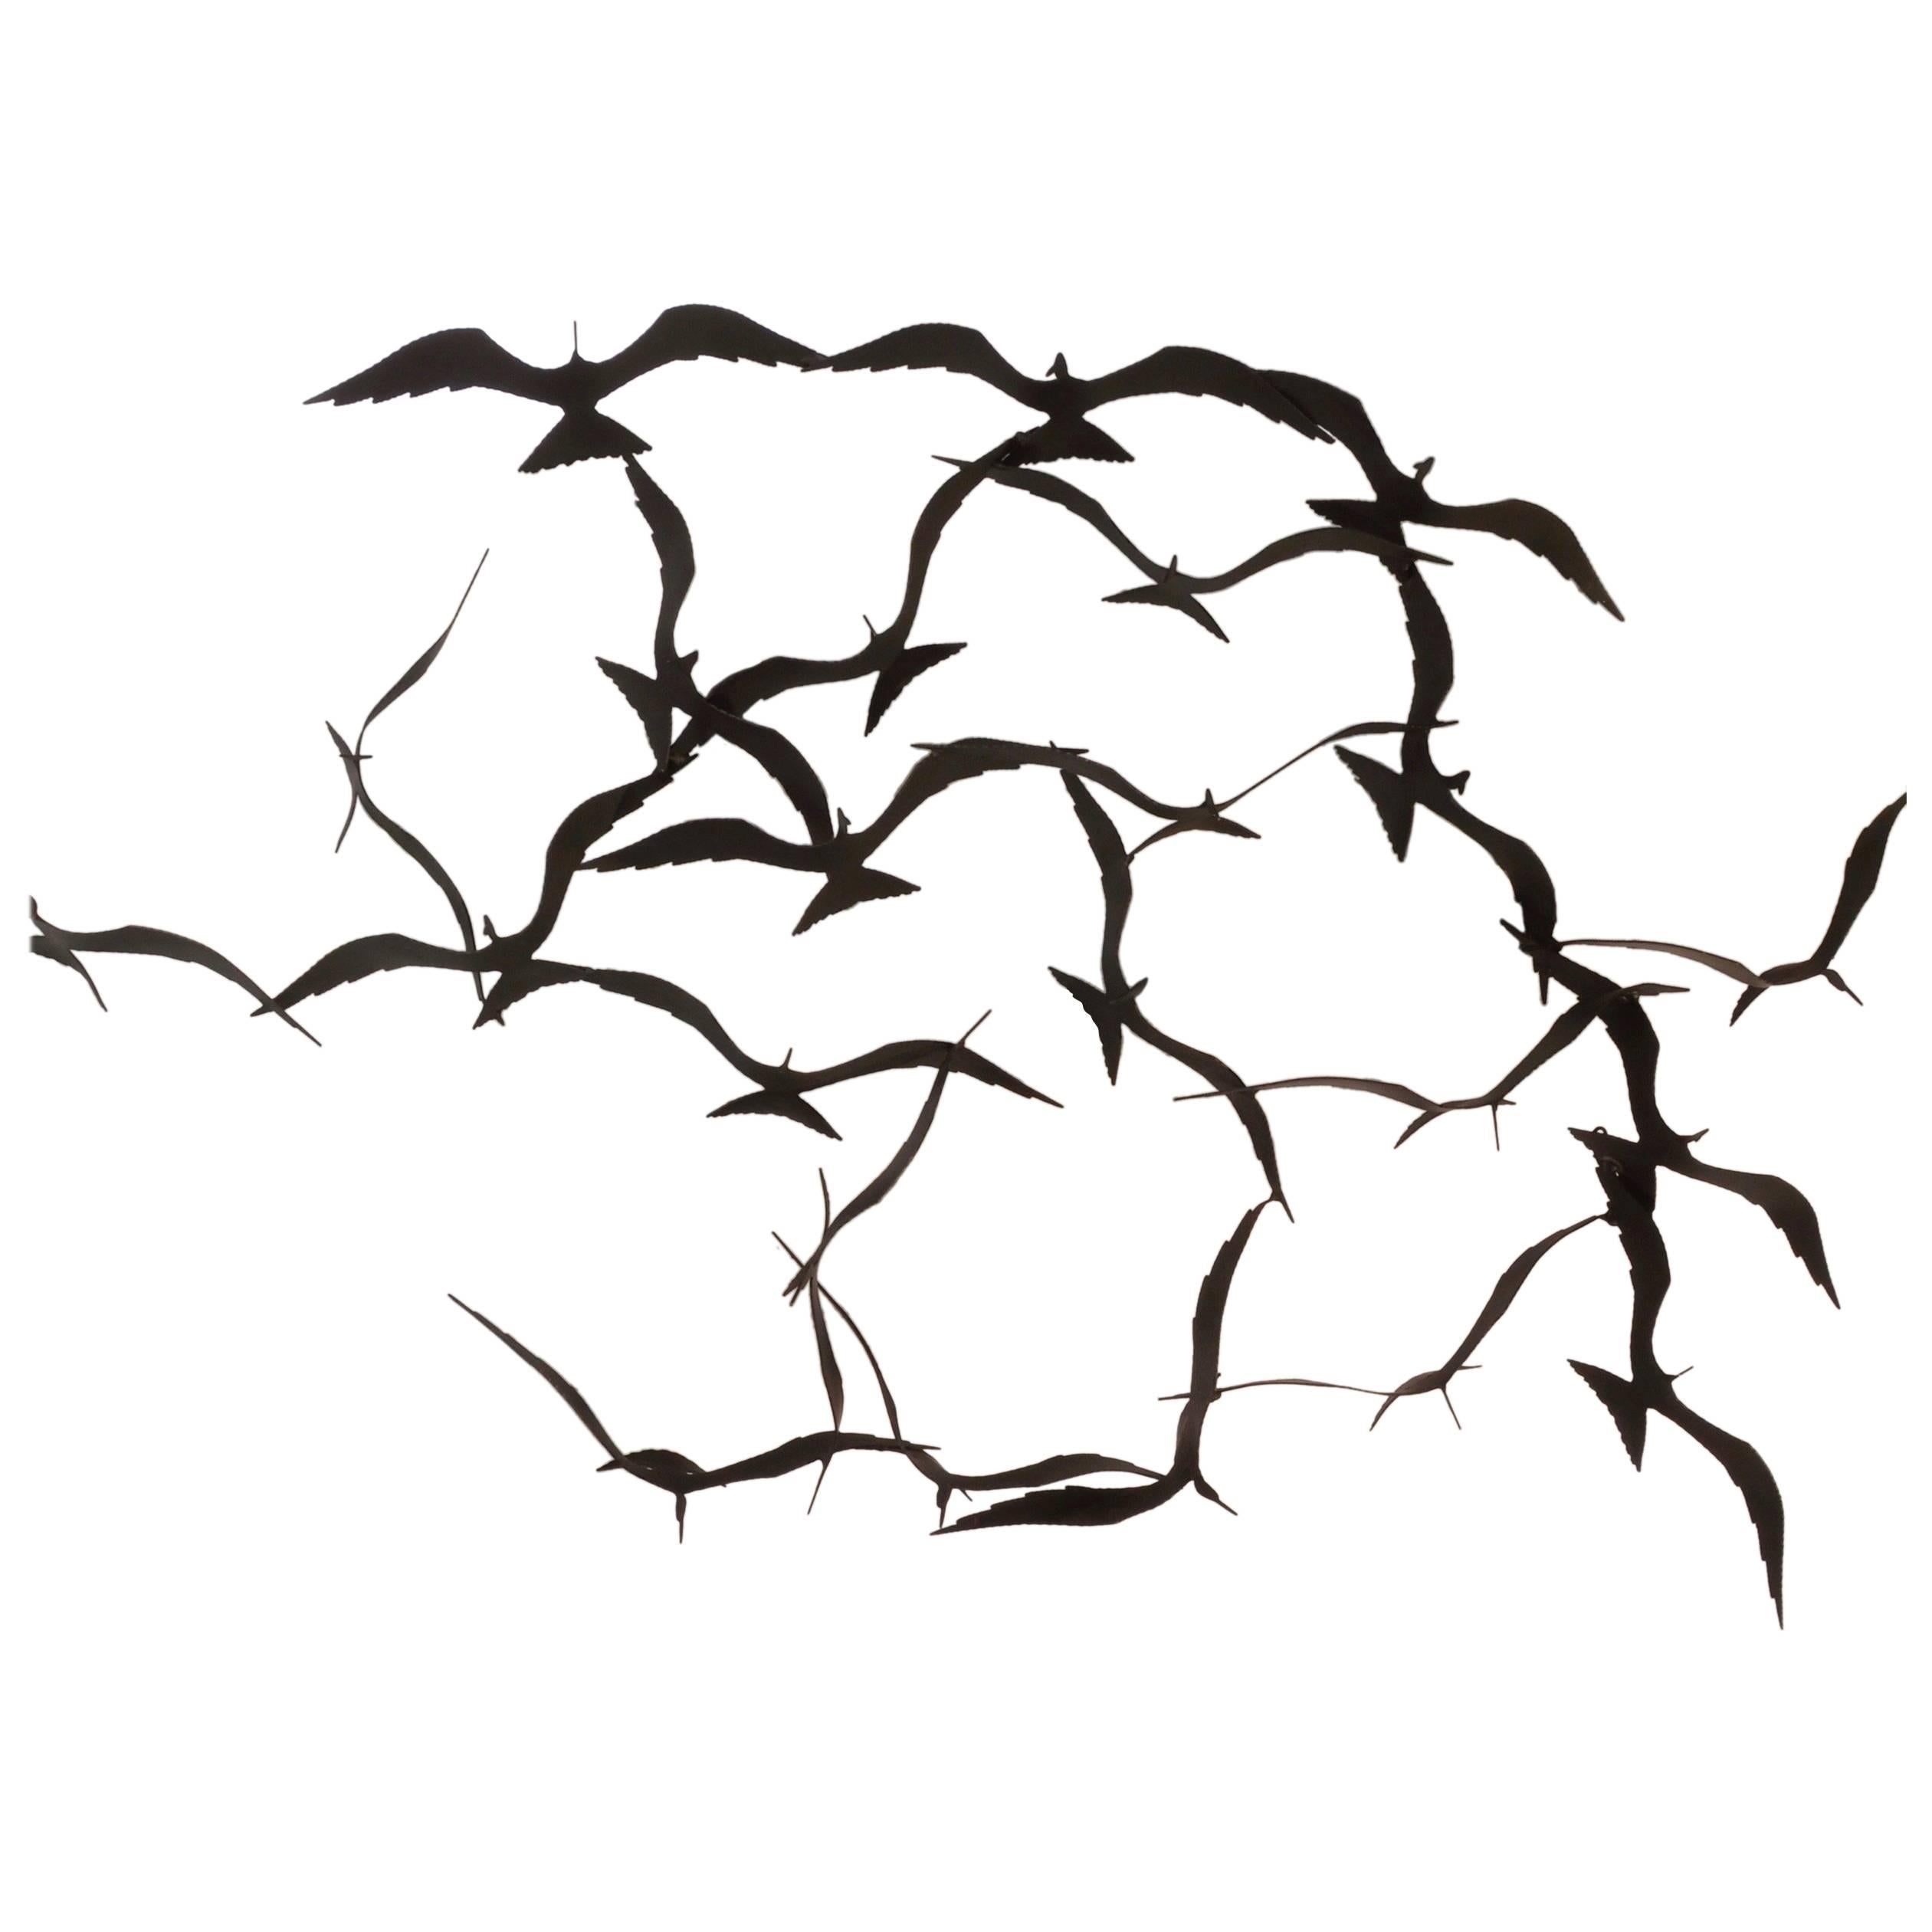 Flock of Seagulls Black Brass Sculpture by Bijan